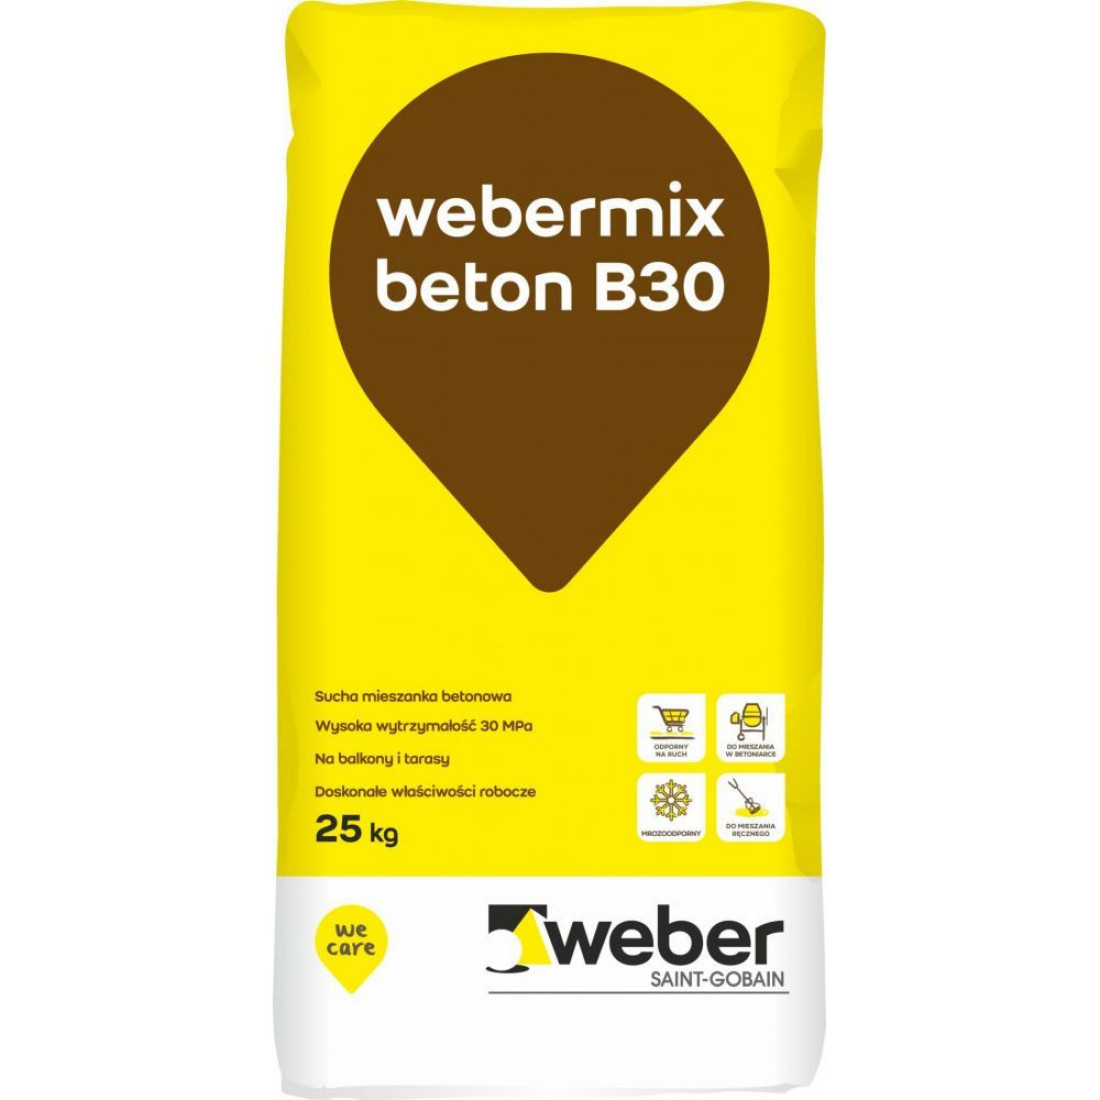 Webermix beton B30